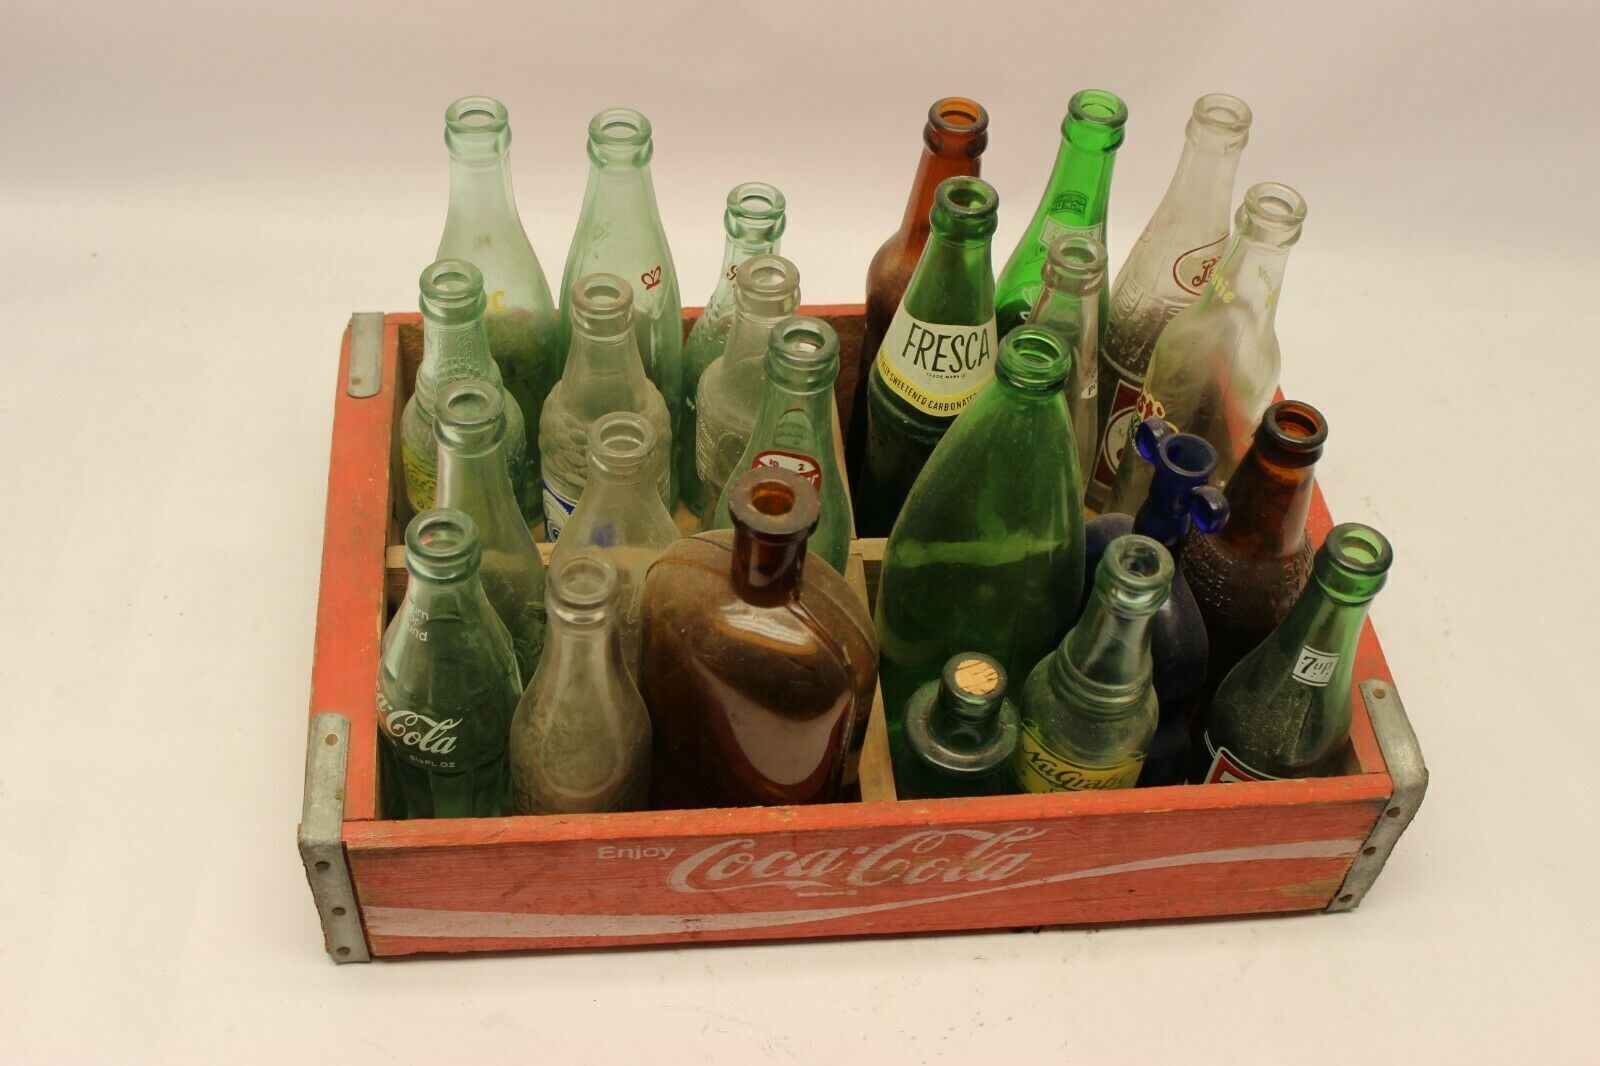 Vintage Coca Cola Wooden Soda Pop Woodstock bottle Crate With Vintage Bottles